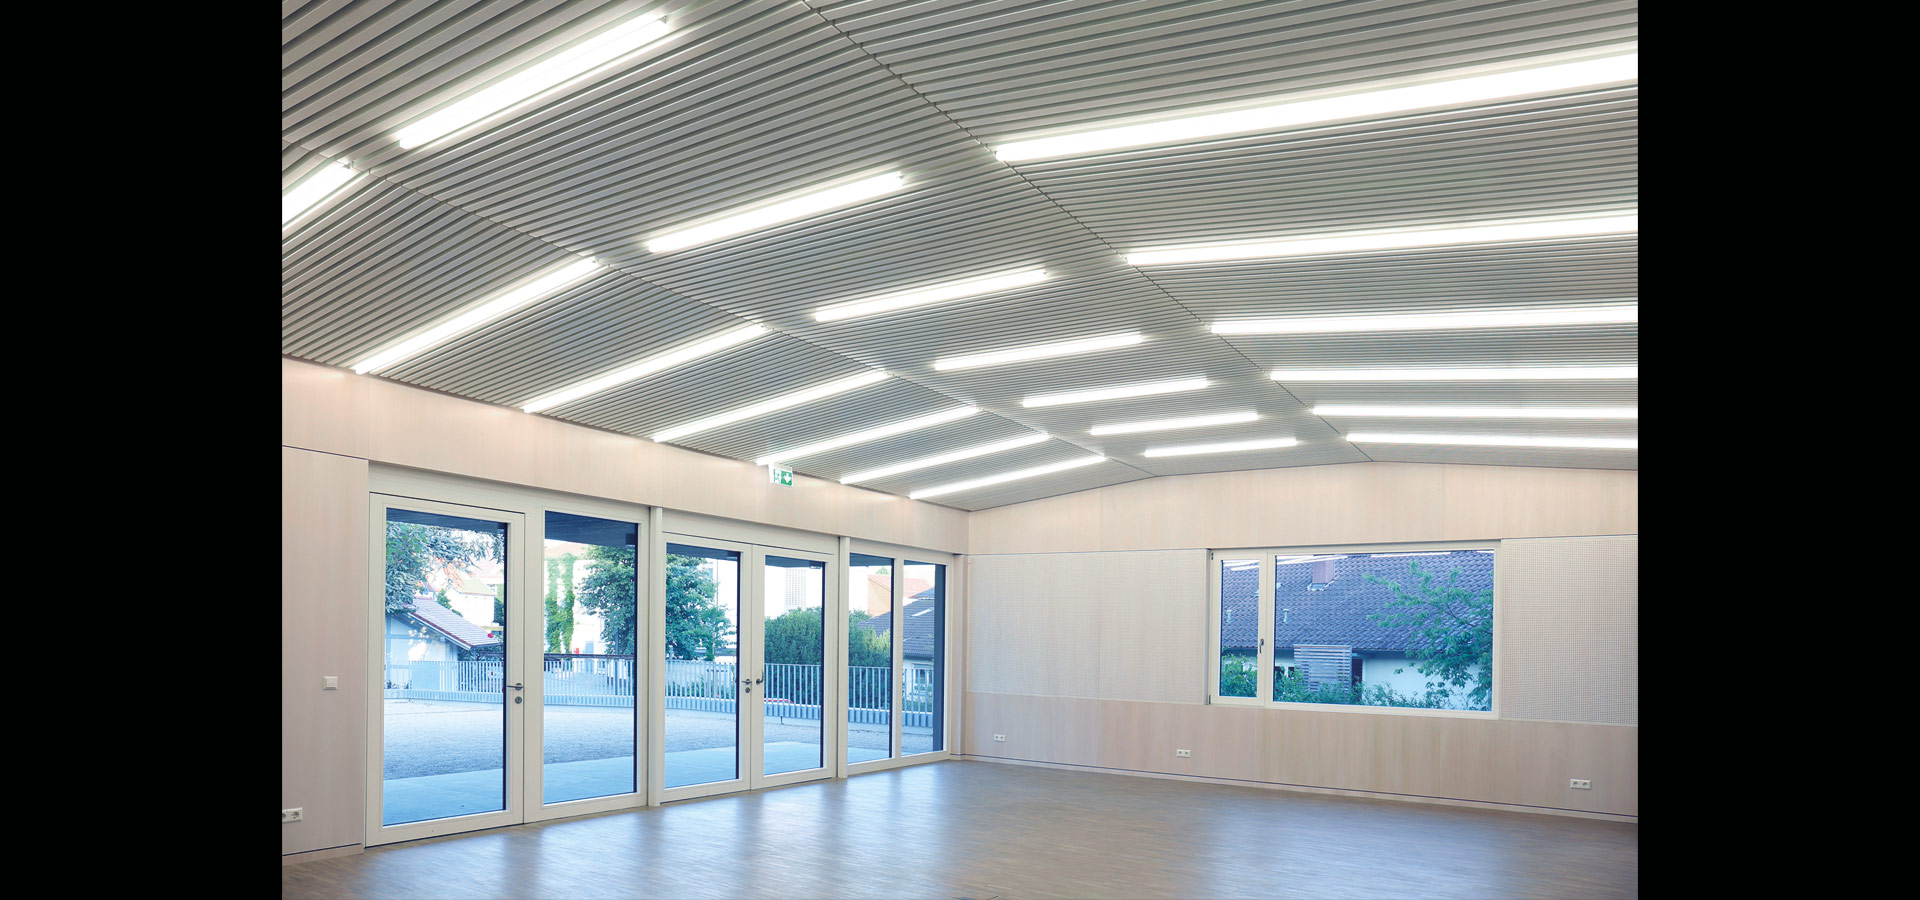 Architekturbeleuchtung Gemeinesaal Gemeindehaus Lichtline 20.2 Luxsystem